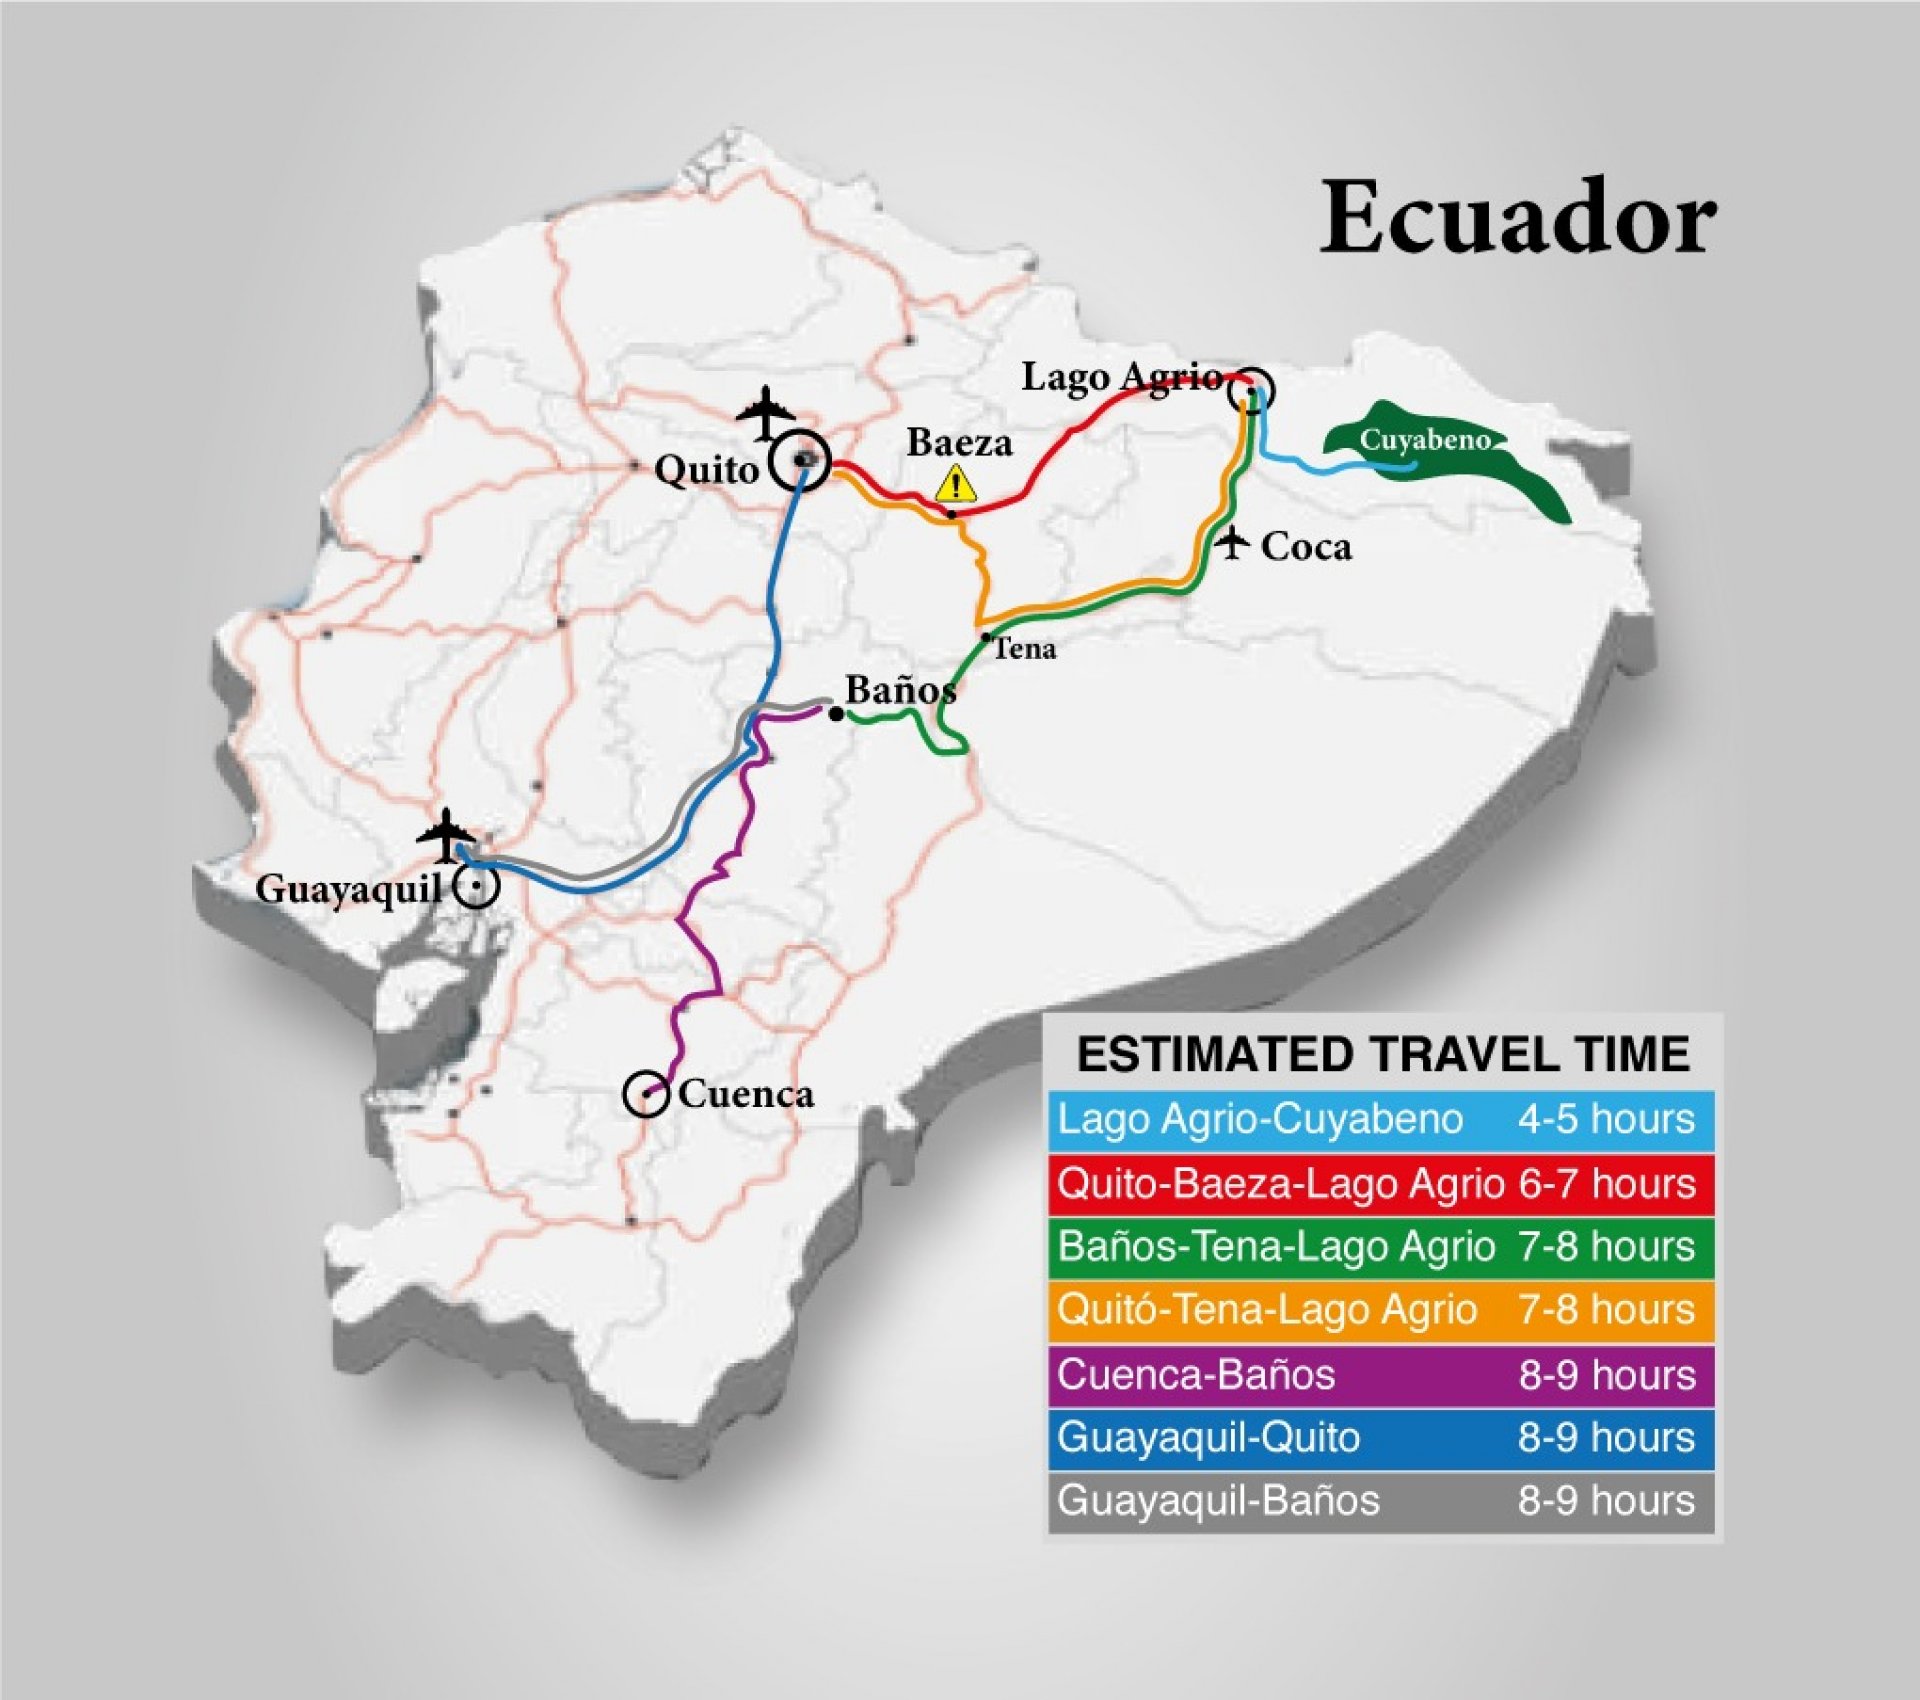 ¿Viajar en Auto al Cuyabeno (Lago Agrio) desde Guayaquil?